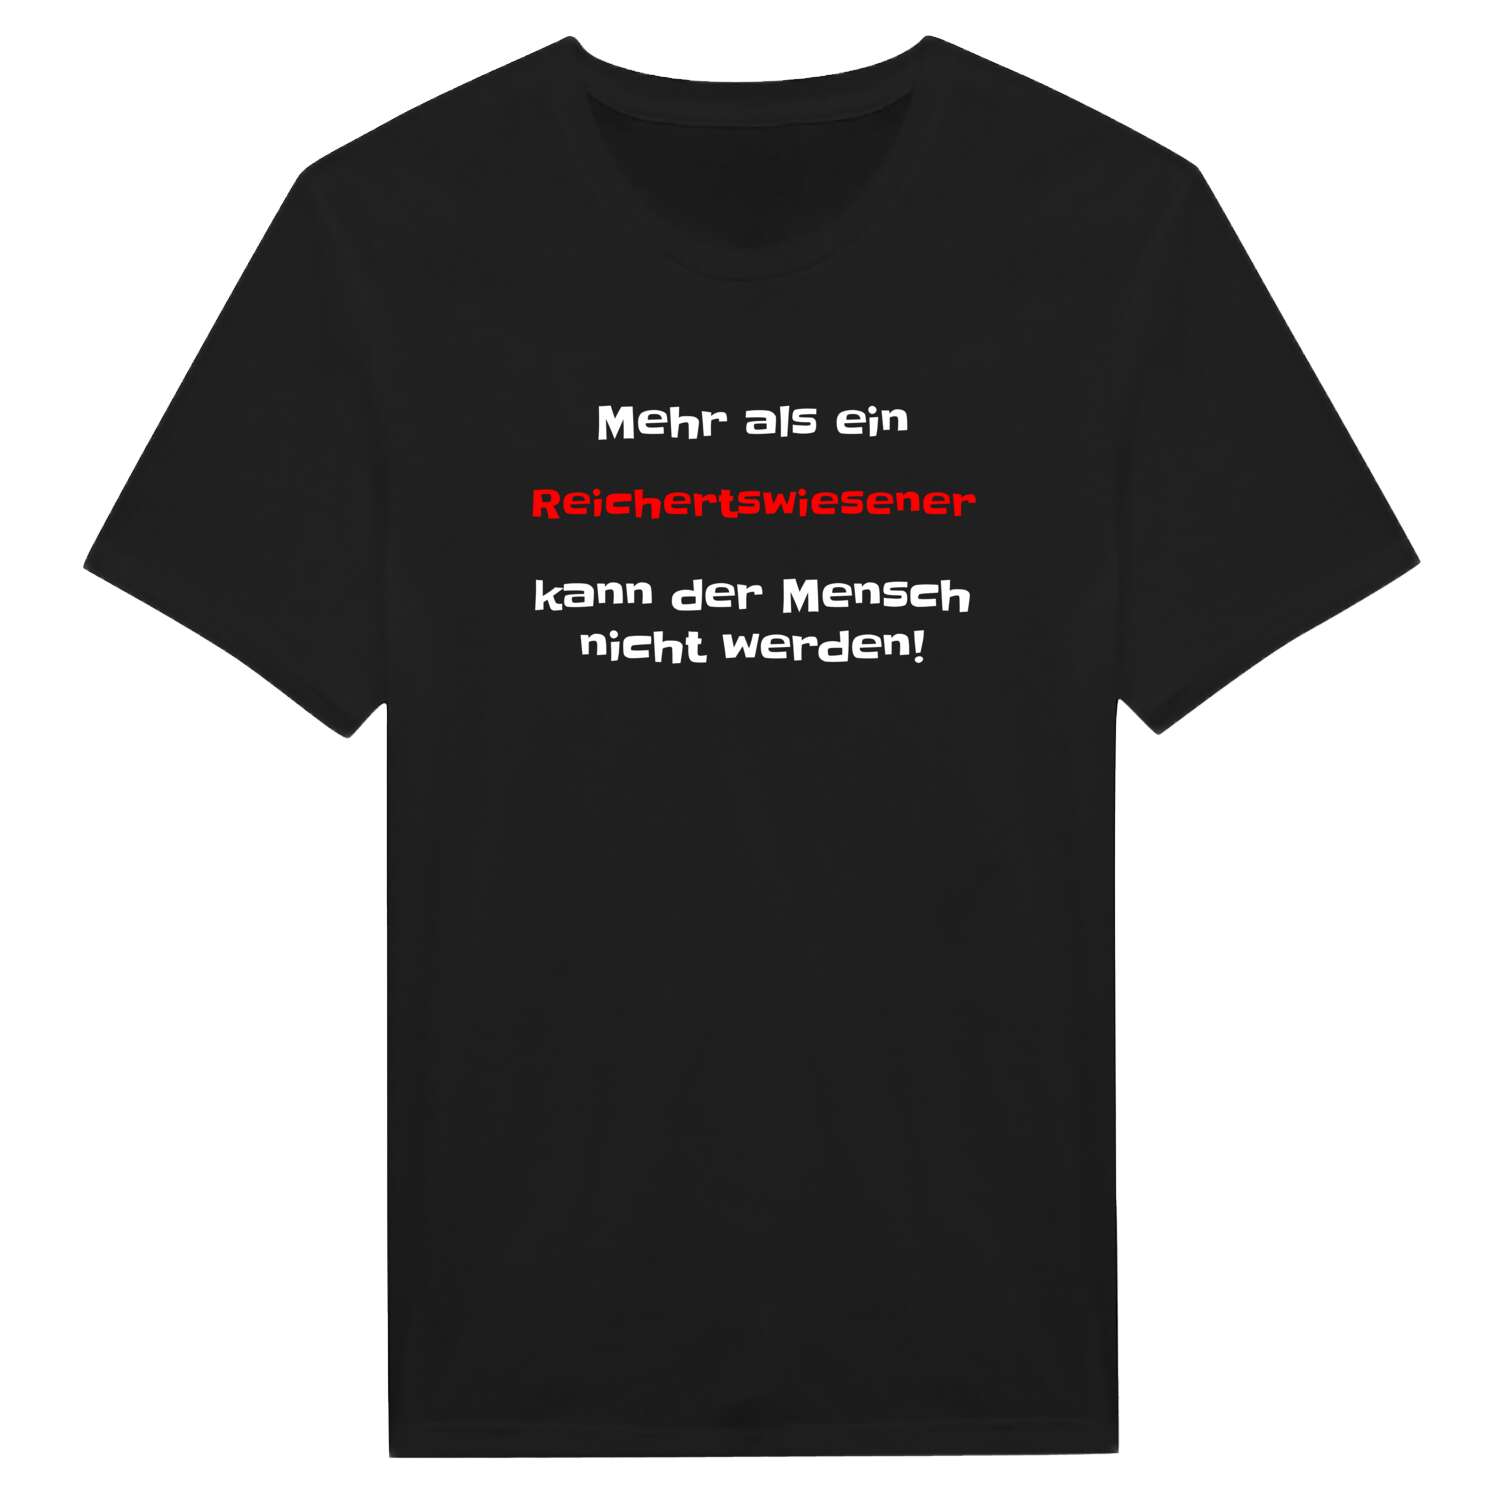 Reichertswiesen T-Shirt »Mehr als ein«